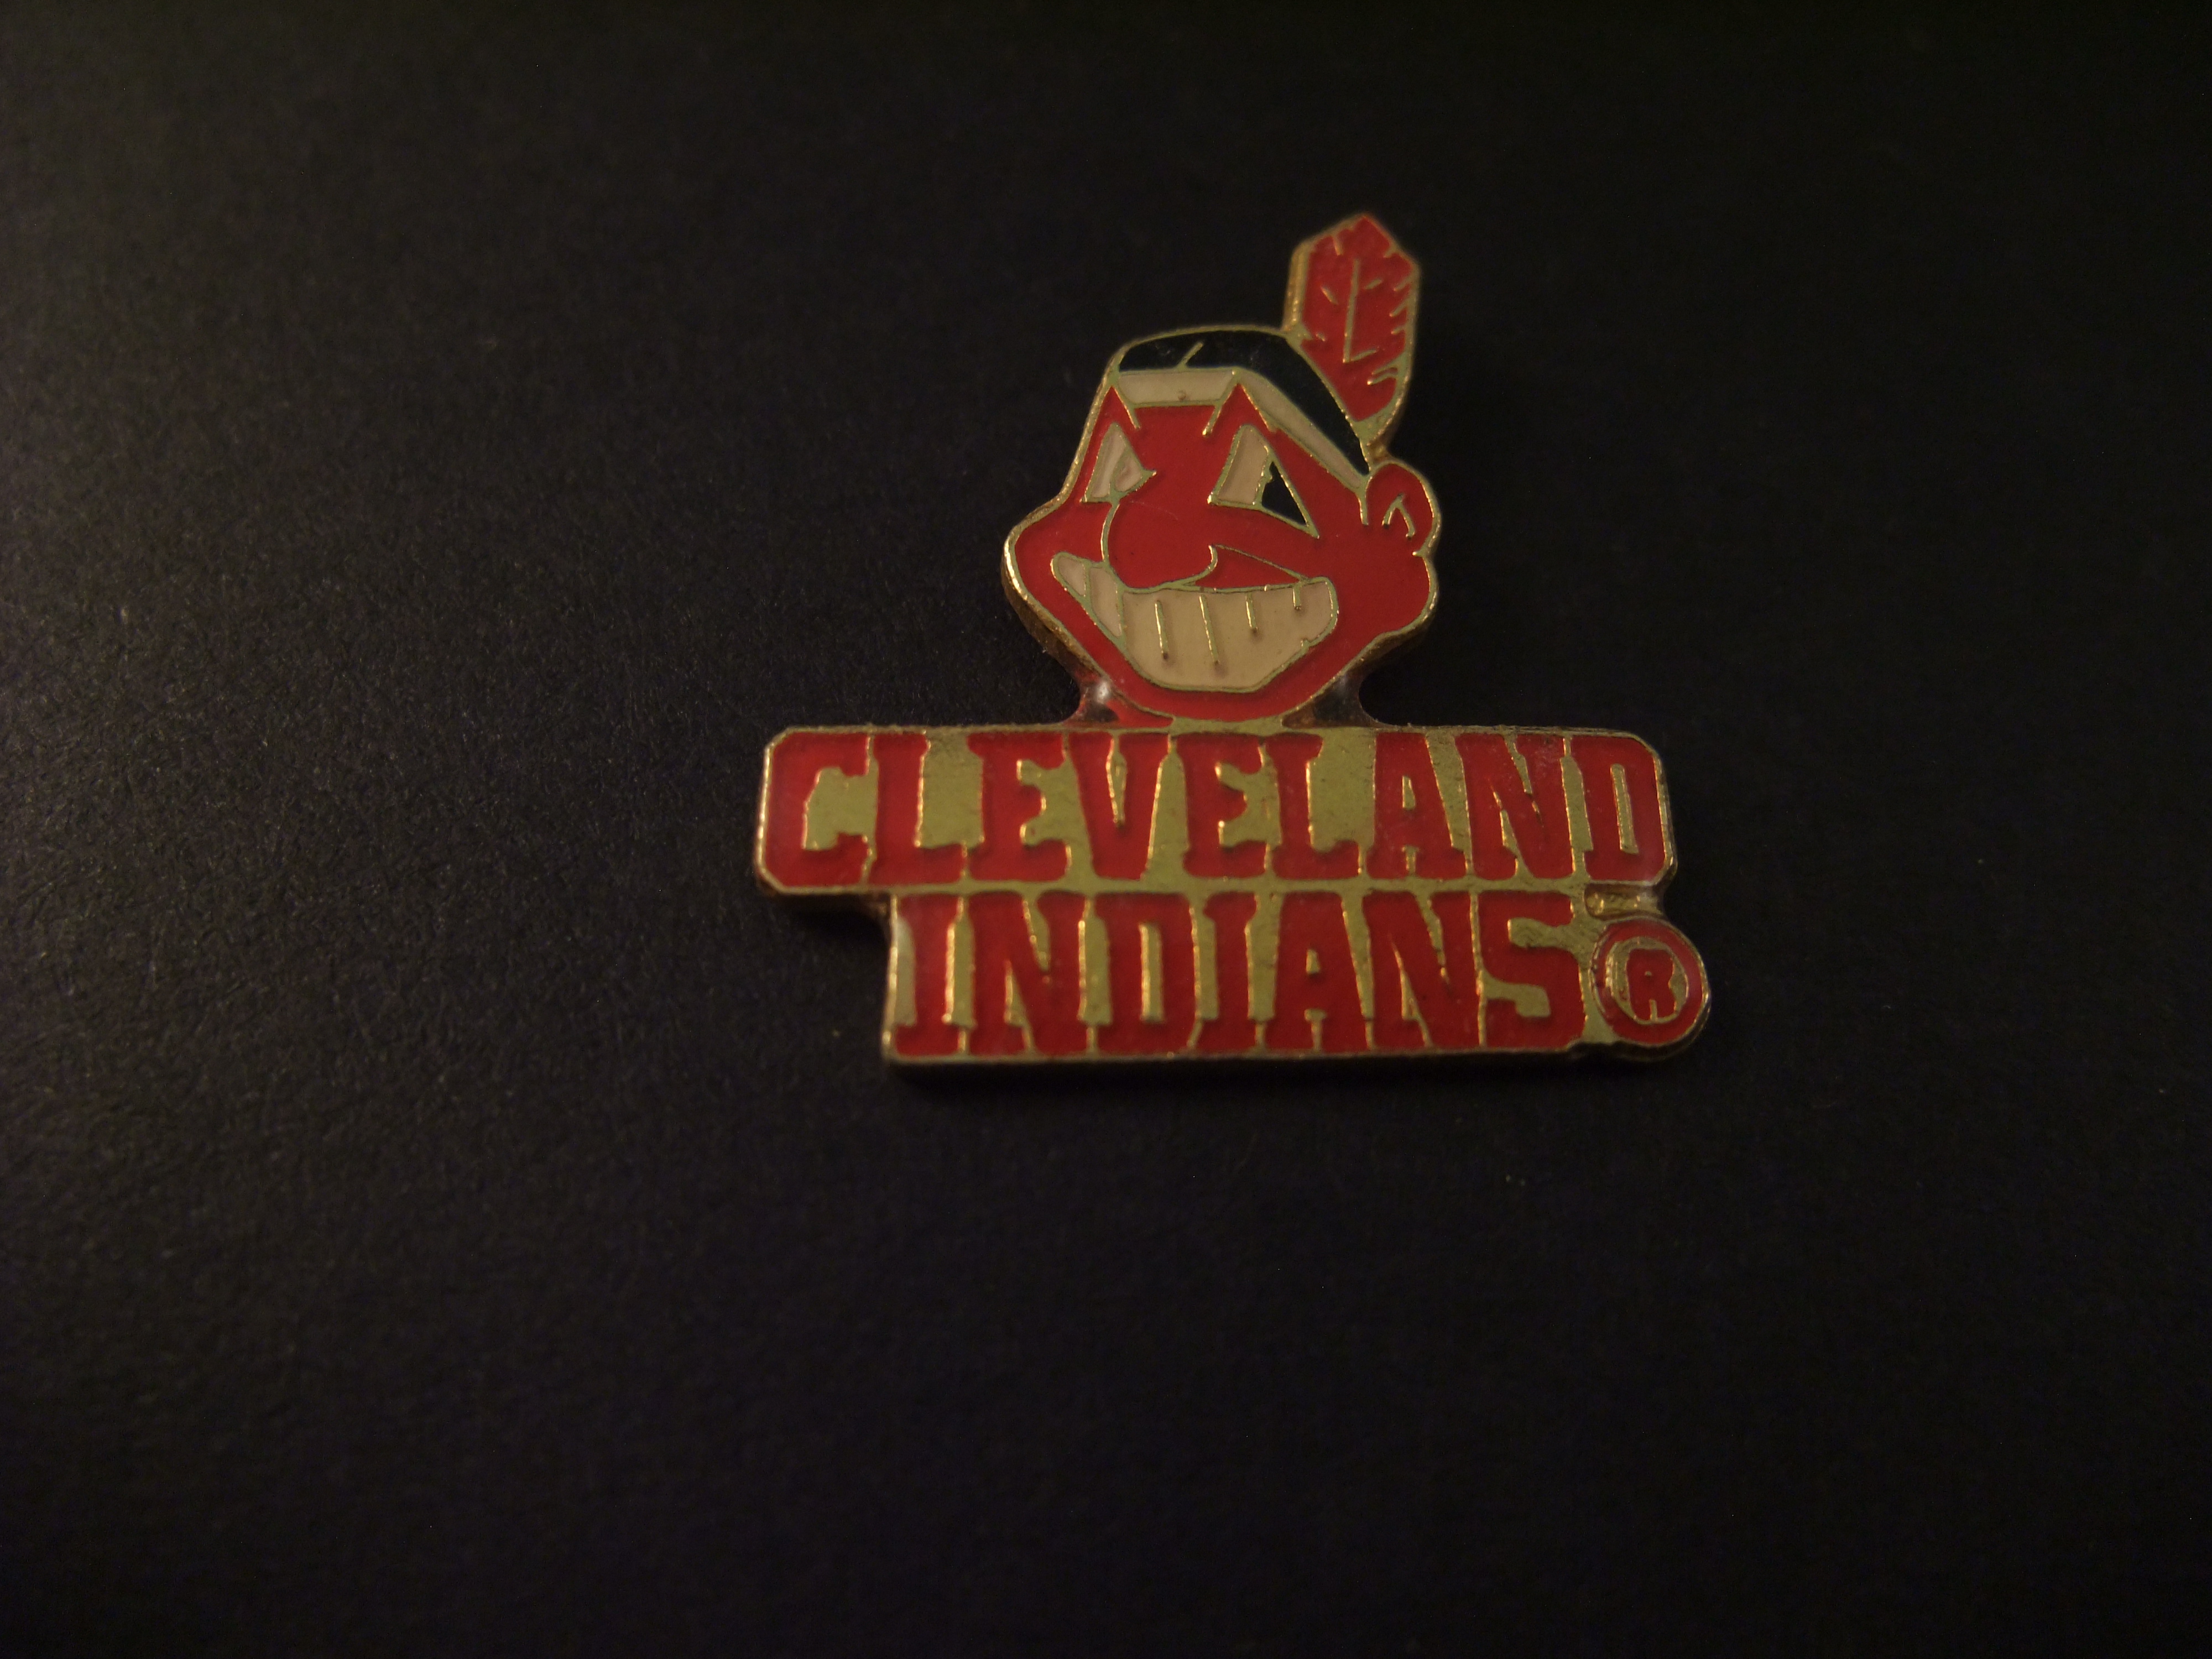 Cleveland Indians Ohio baseballteam